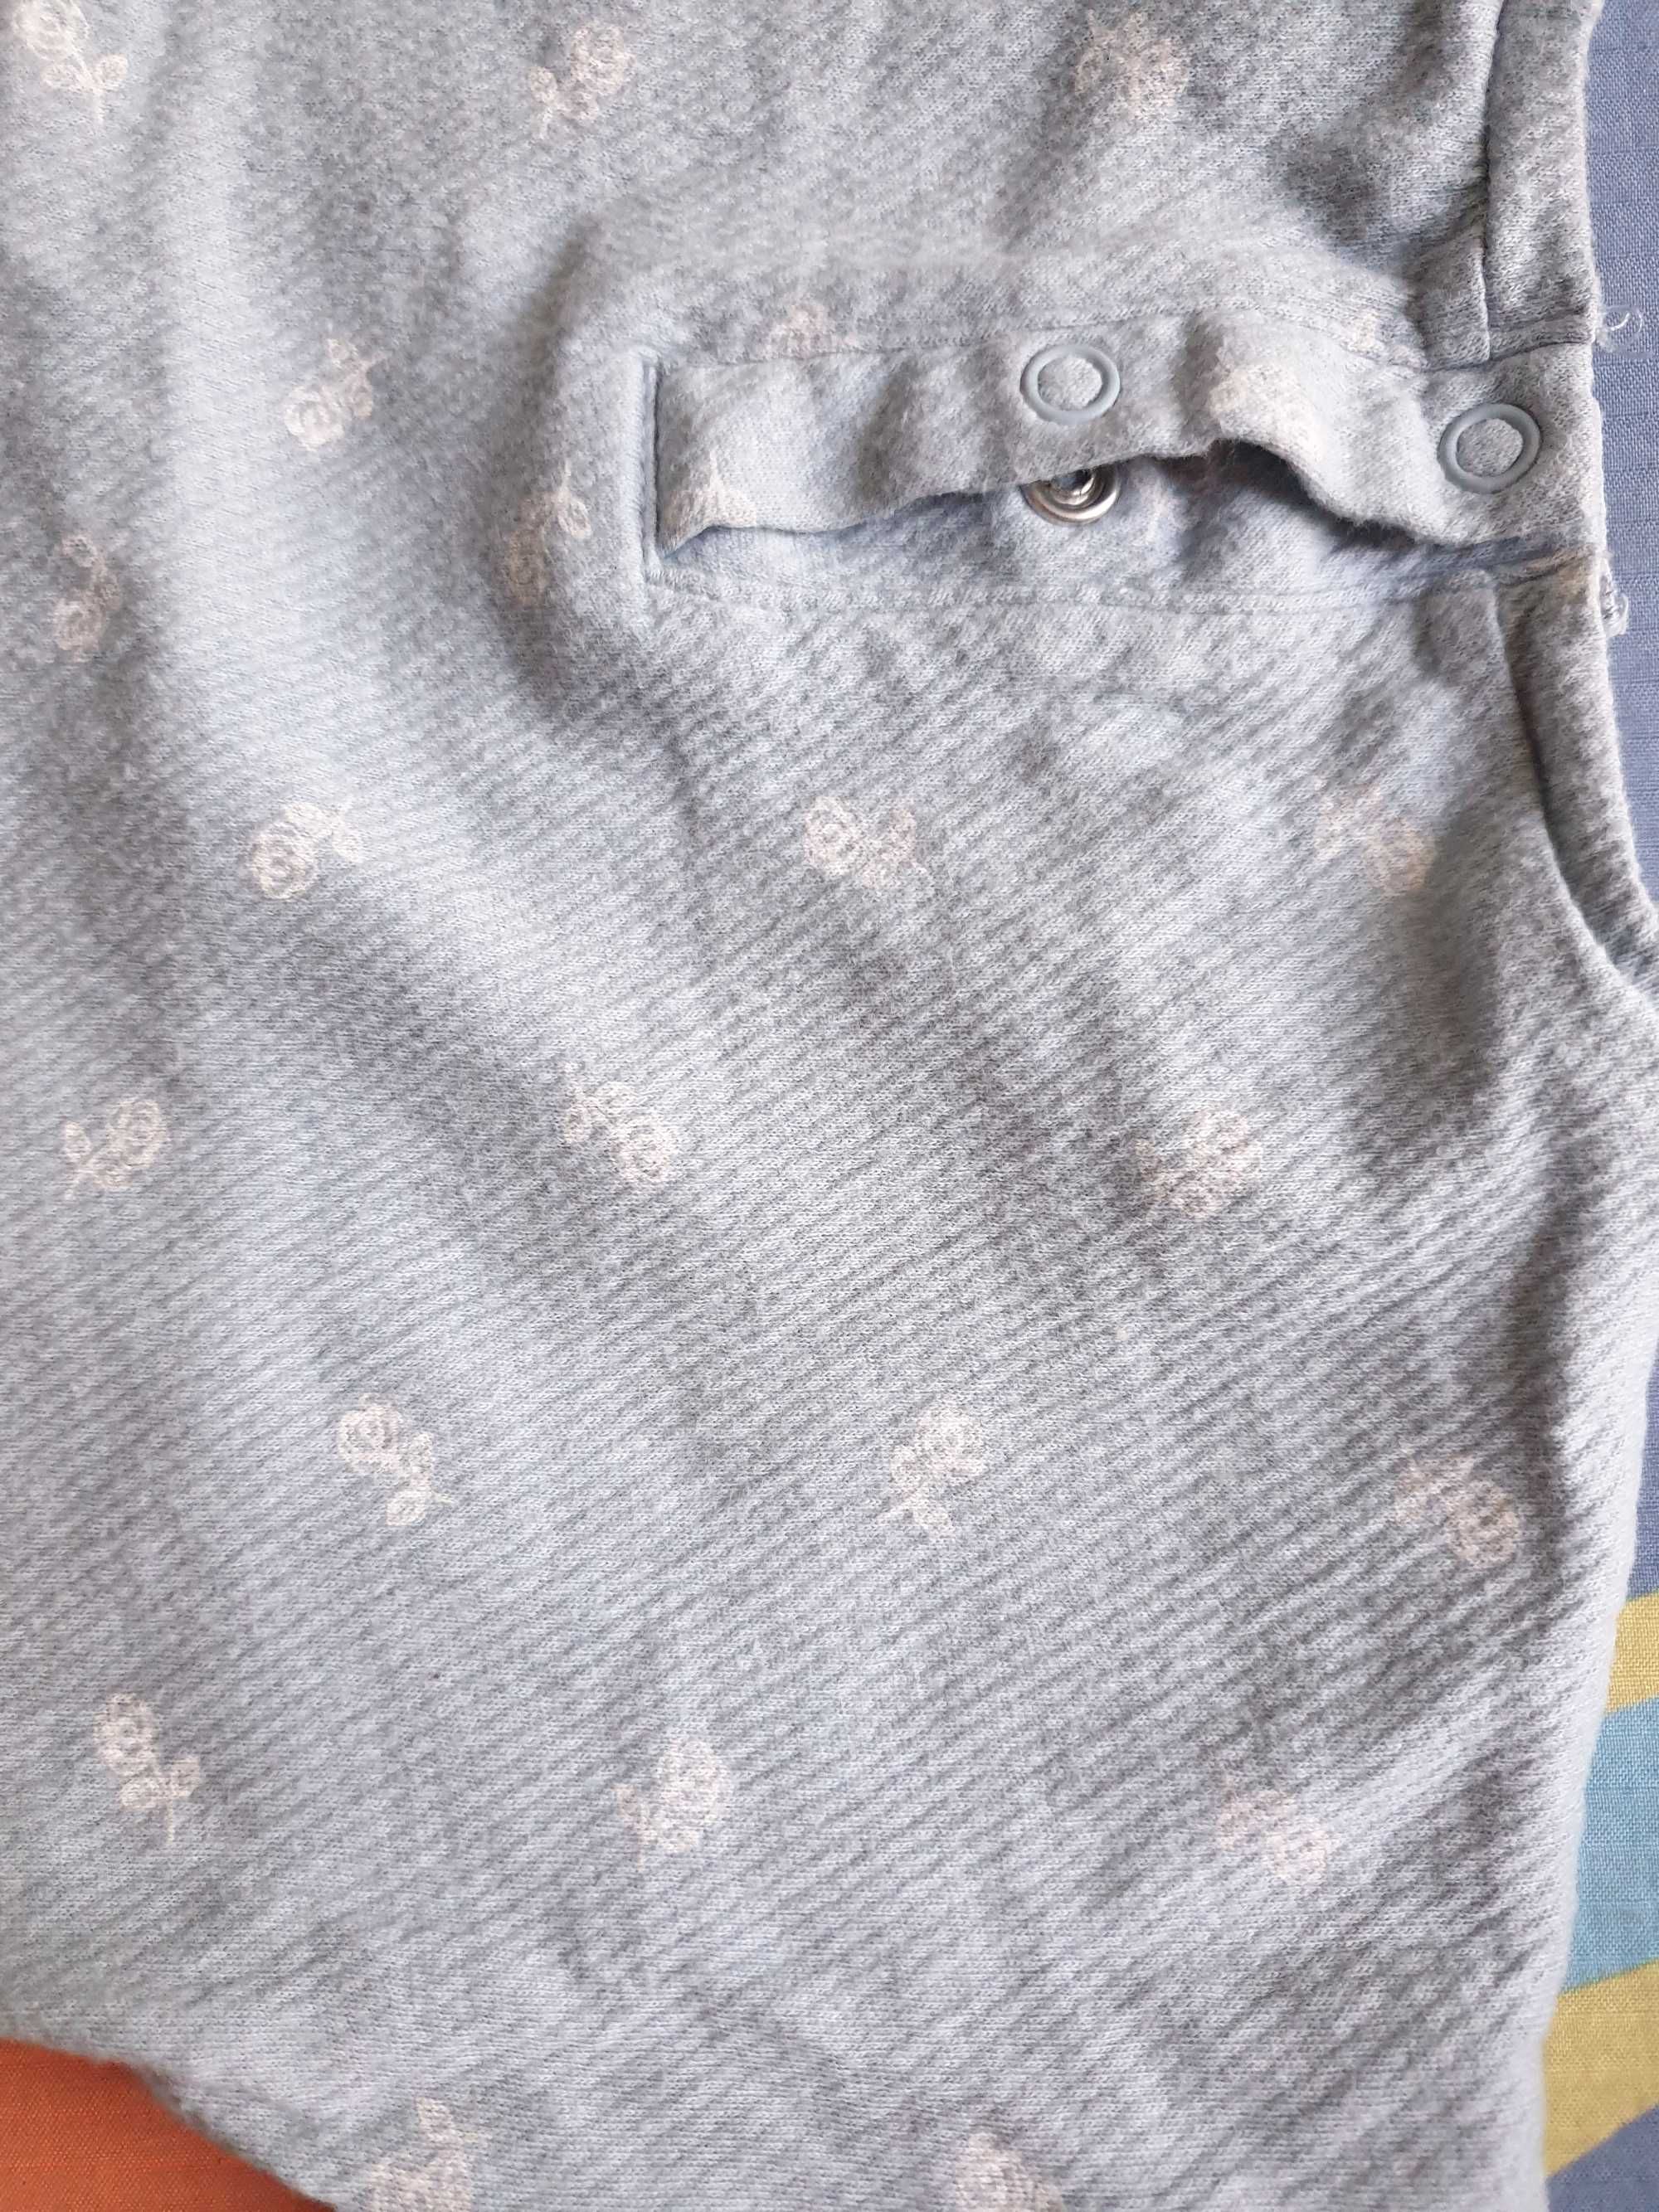 Piżamka dla dziewczynki H&M roz. 74, piżama na lato z falbankami